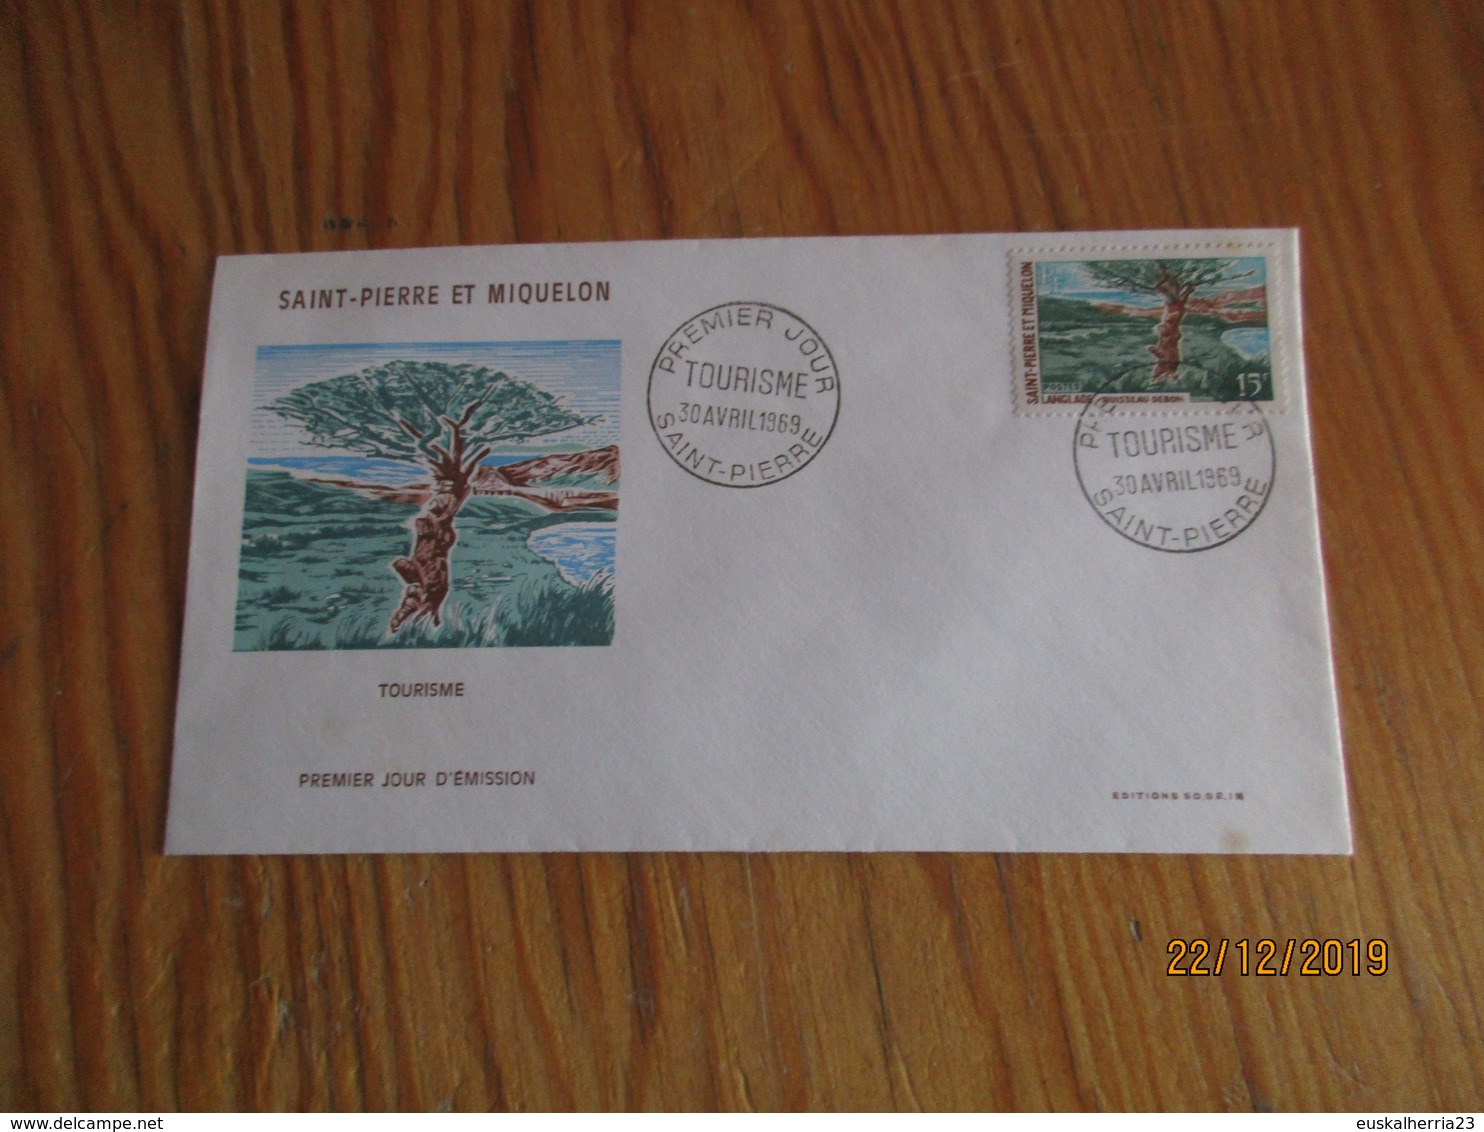 2 Enveloppes 1er Jour Saint-Pierre Et Miquelon Tourisme 1969 - FDC